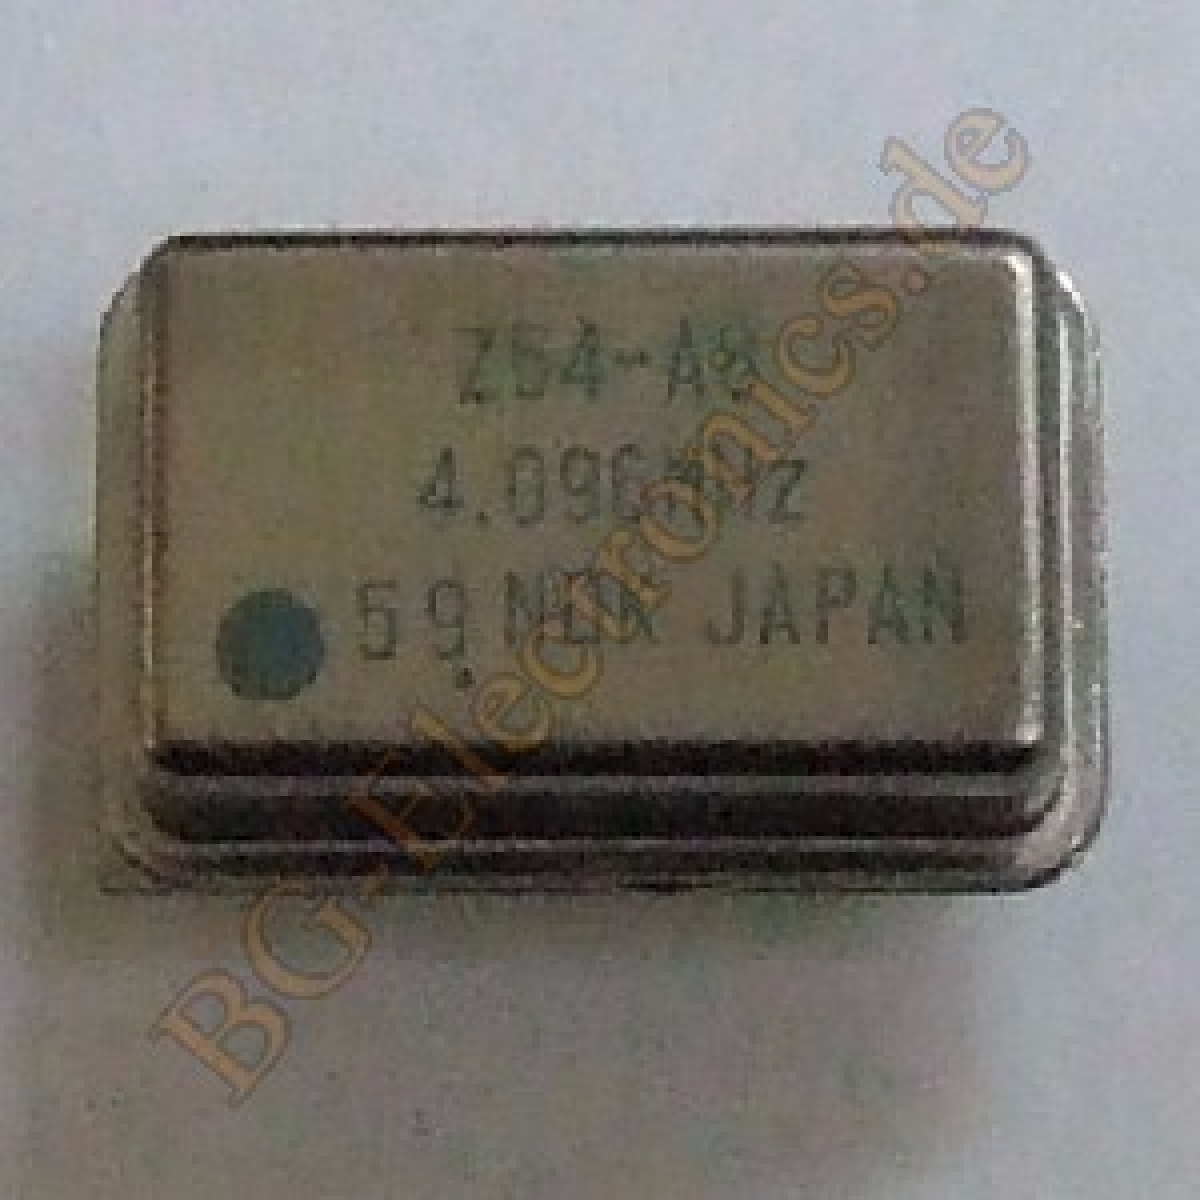 4.096 MHz Crystal Oscillator